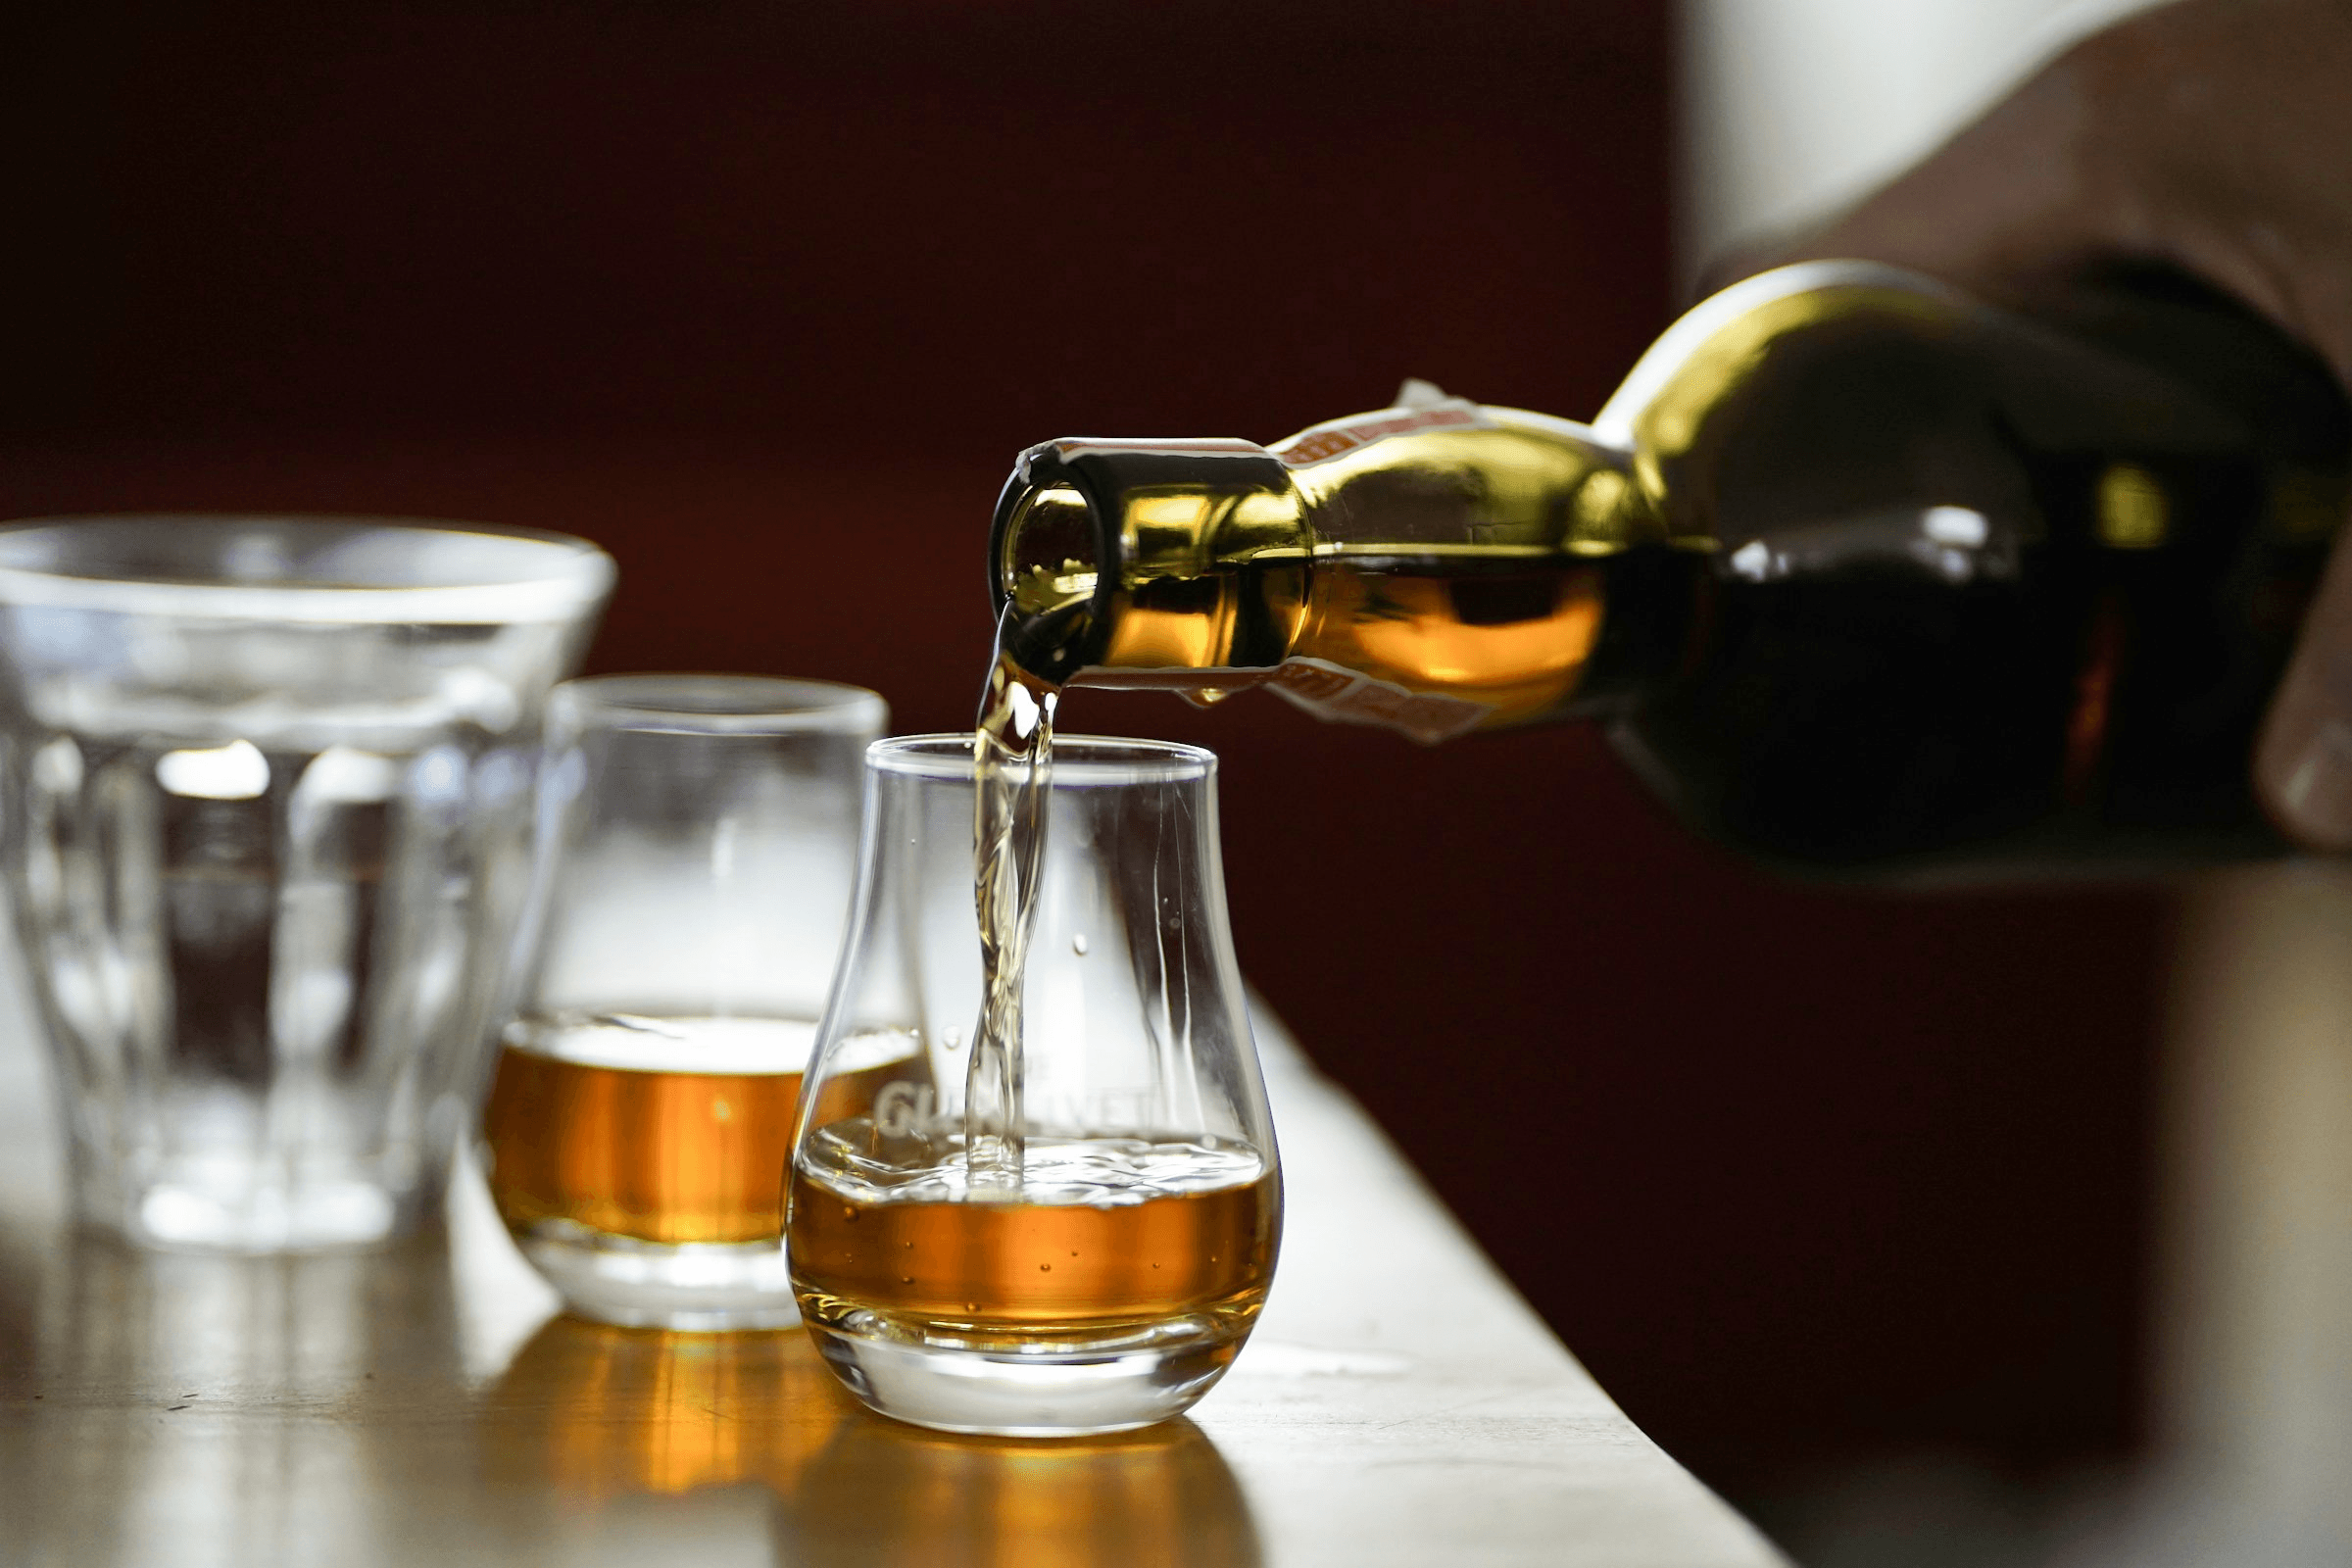 2 Whisky-Gläser auf einem Tisch, eines wird gerade befüllt